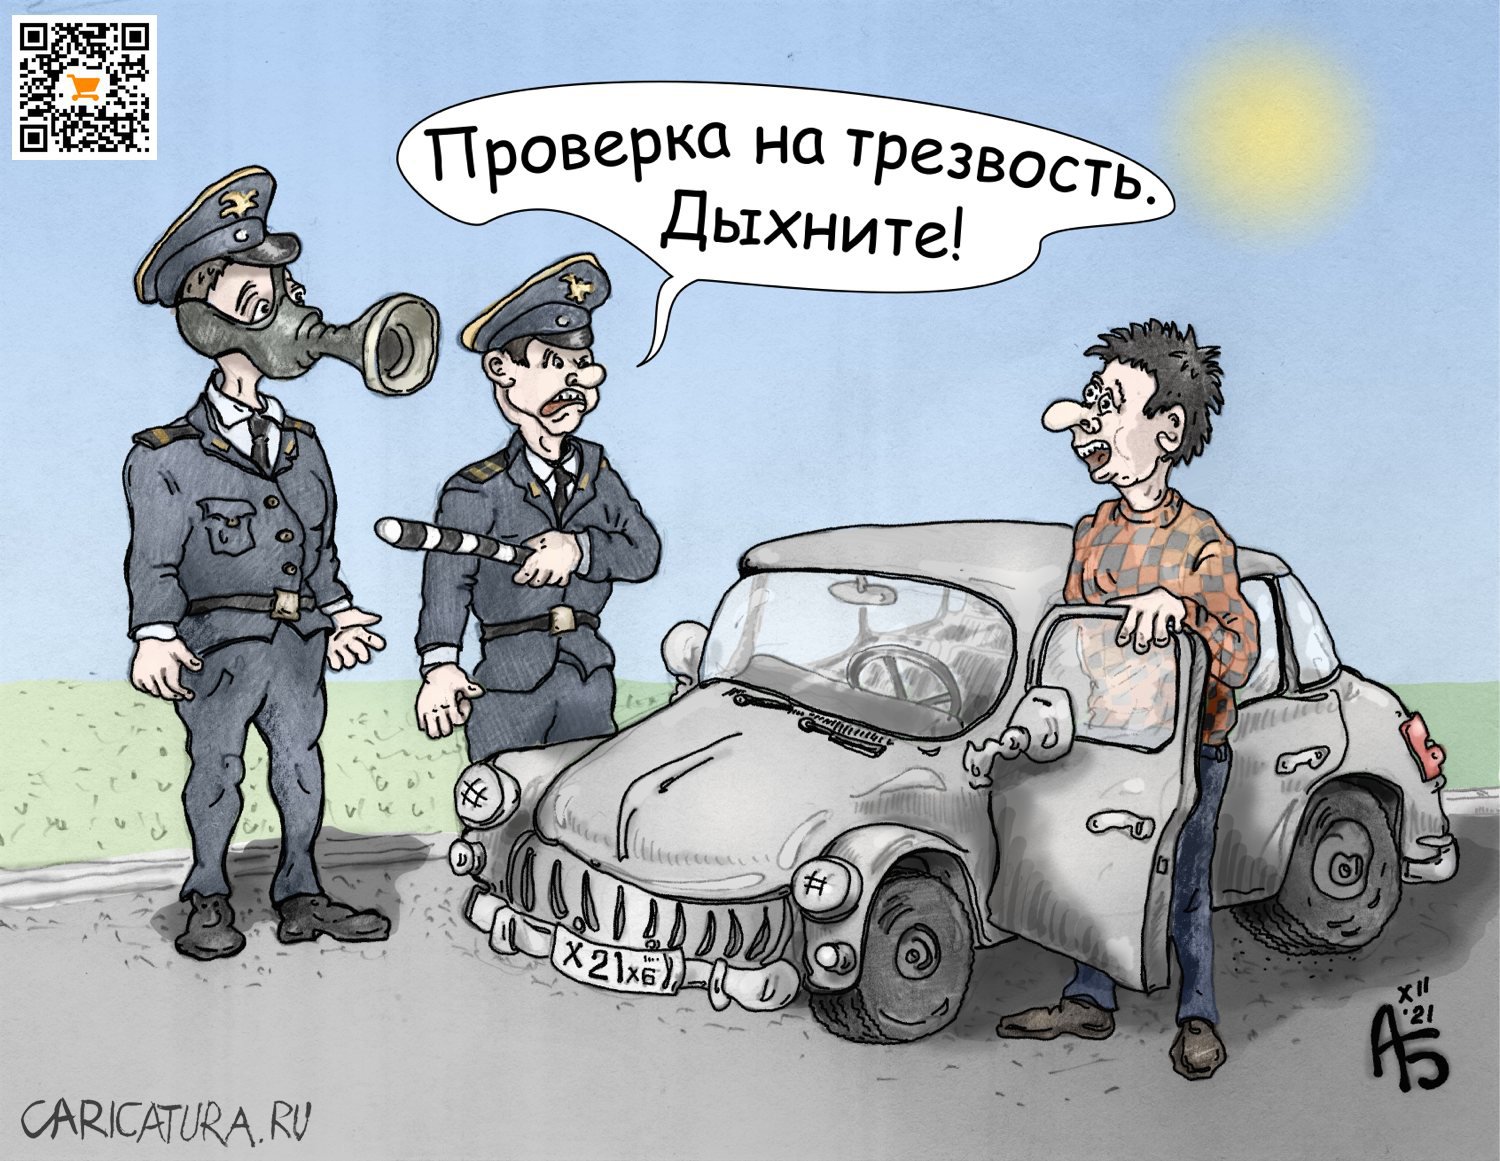 Карикатура "Проверка", Александр Богданов